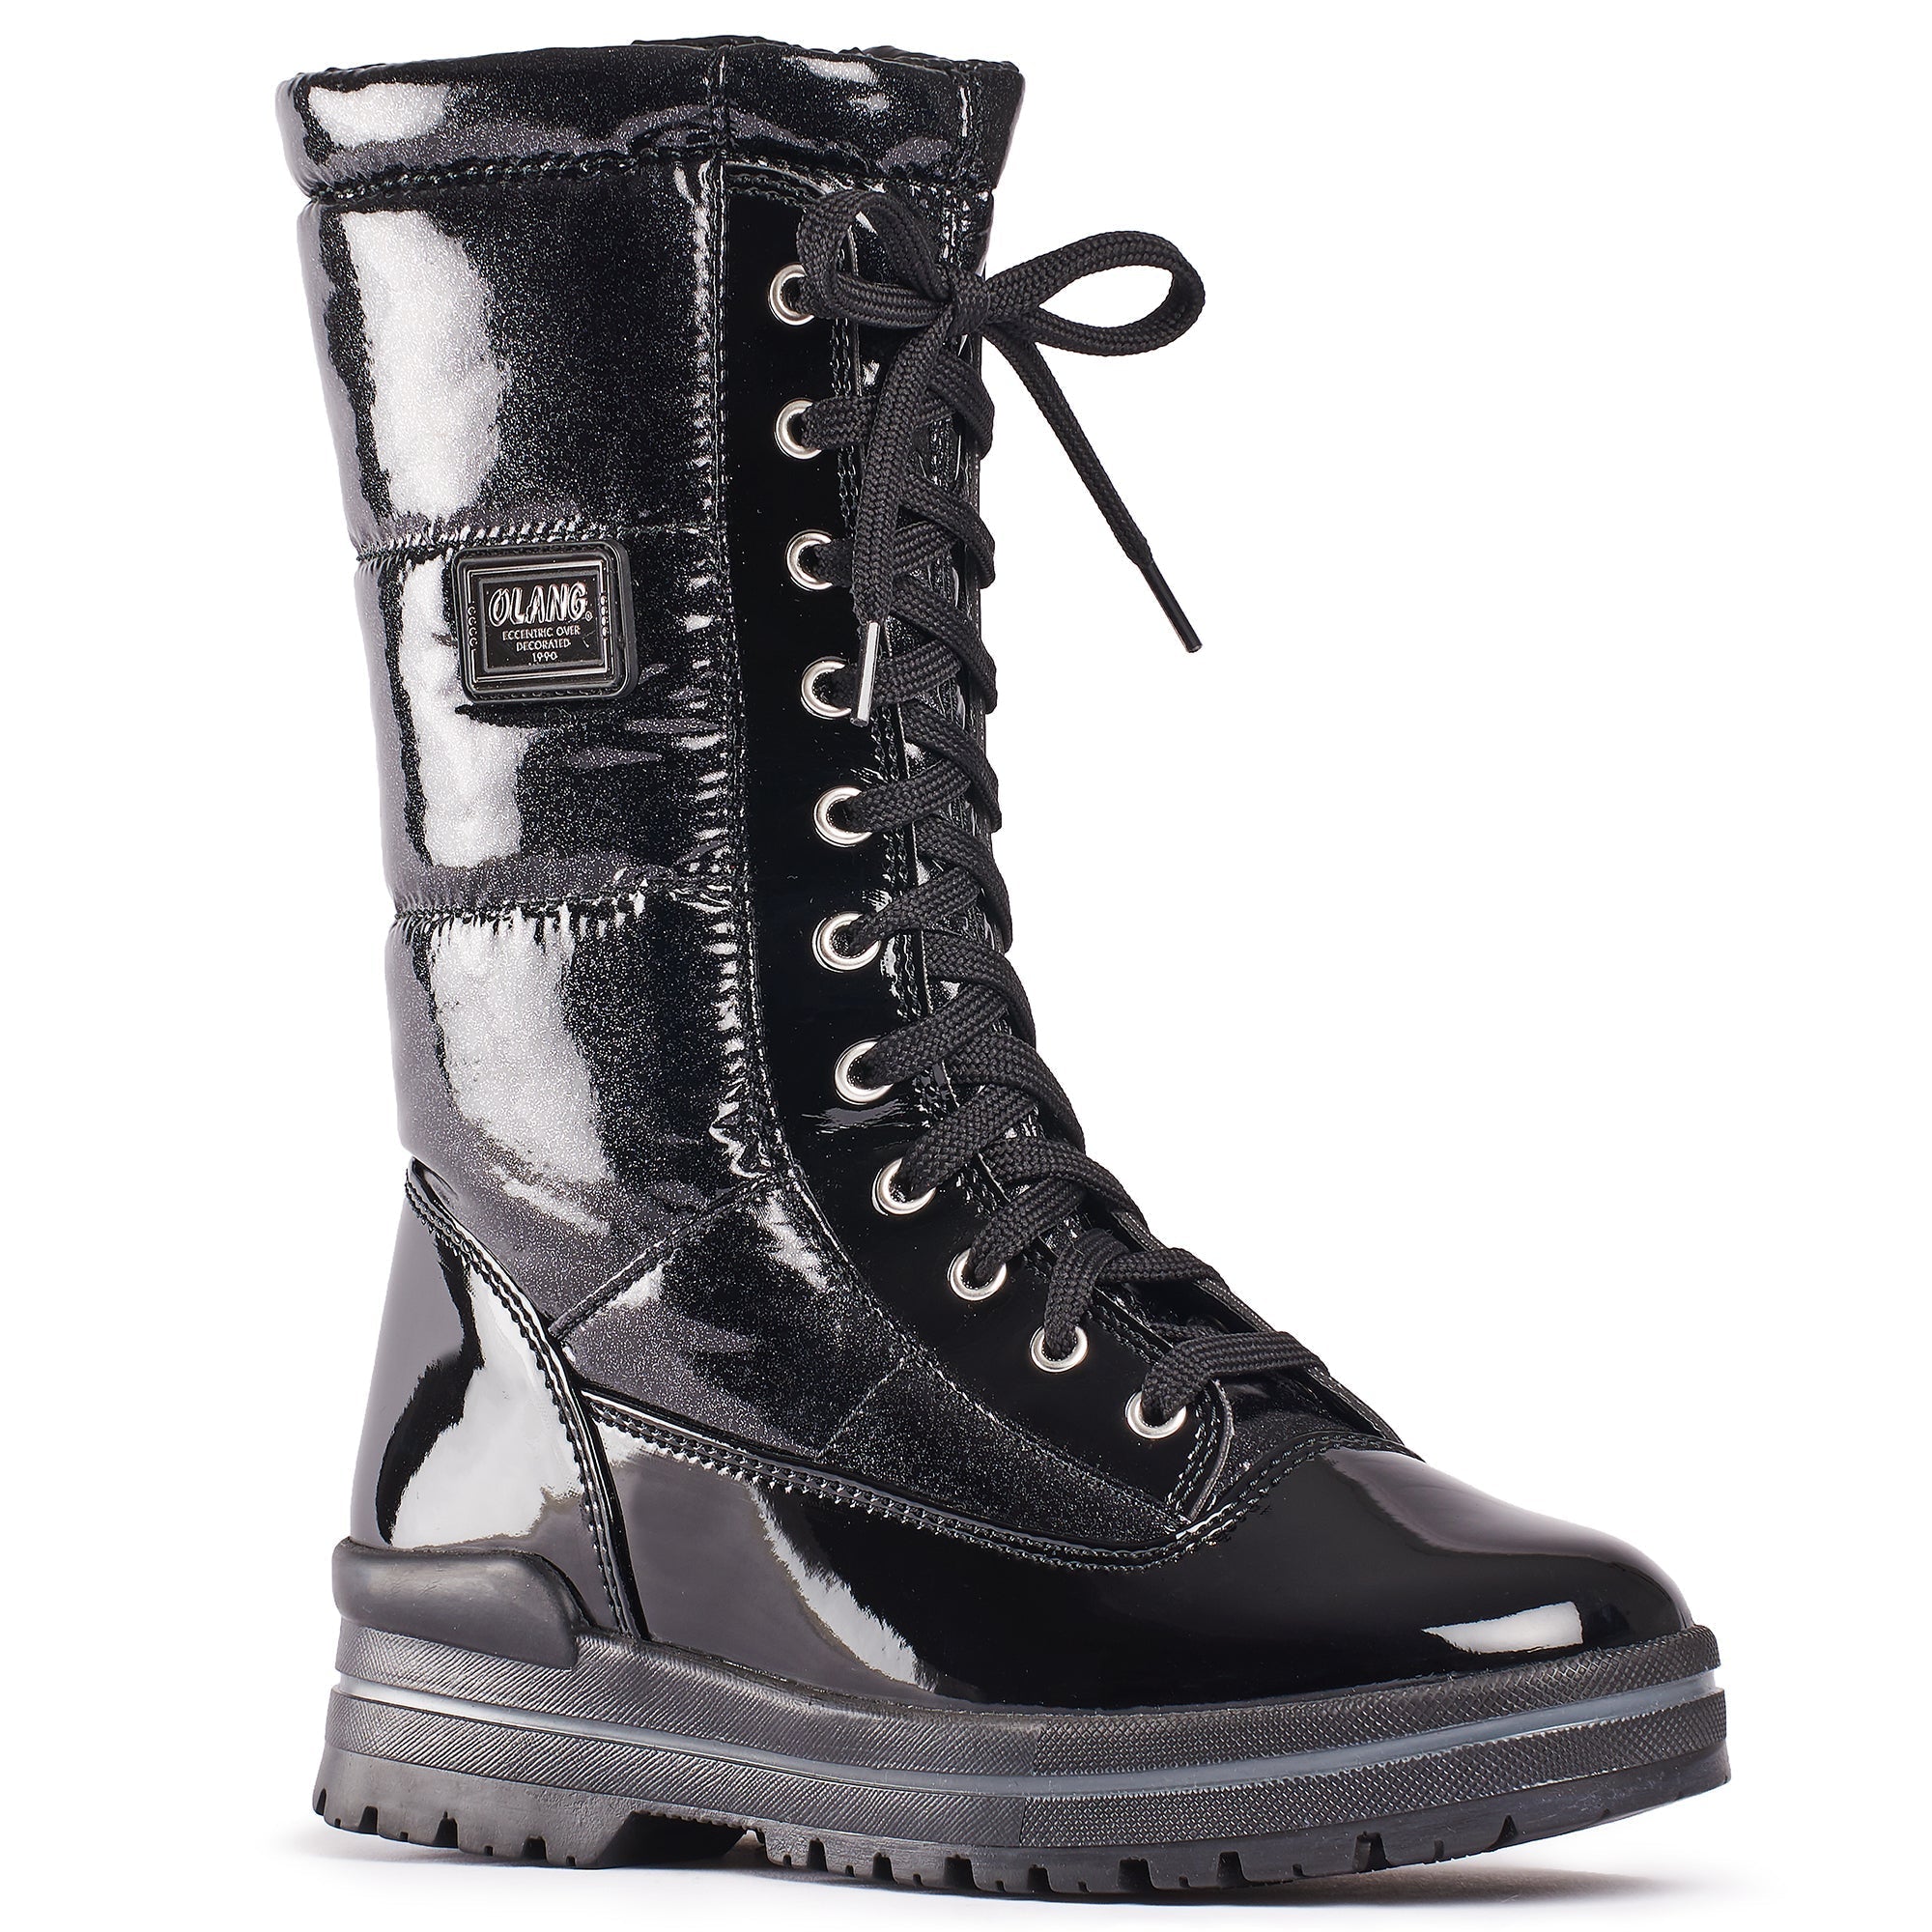 OLANG GLAMOUR - Women's winter boots - FINAL SALE - Boutique Bubbles